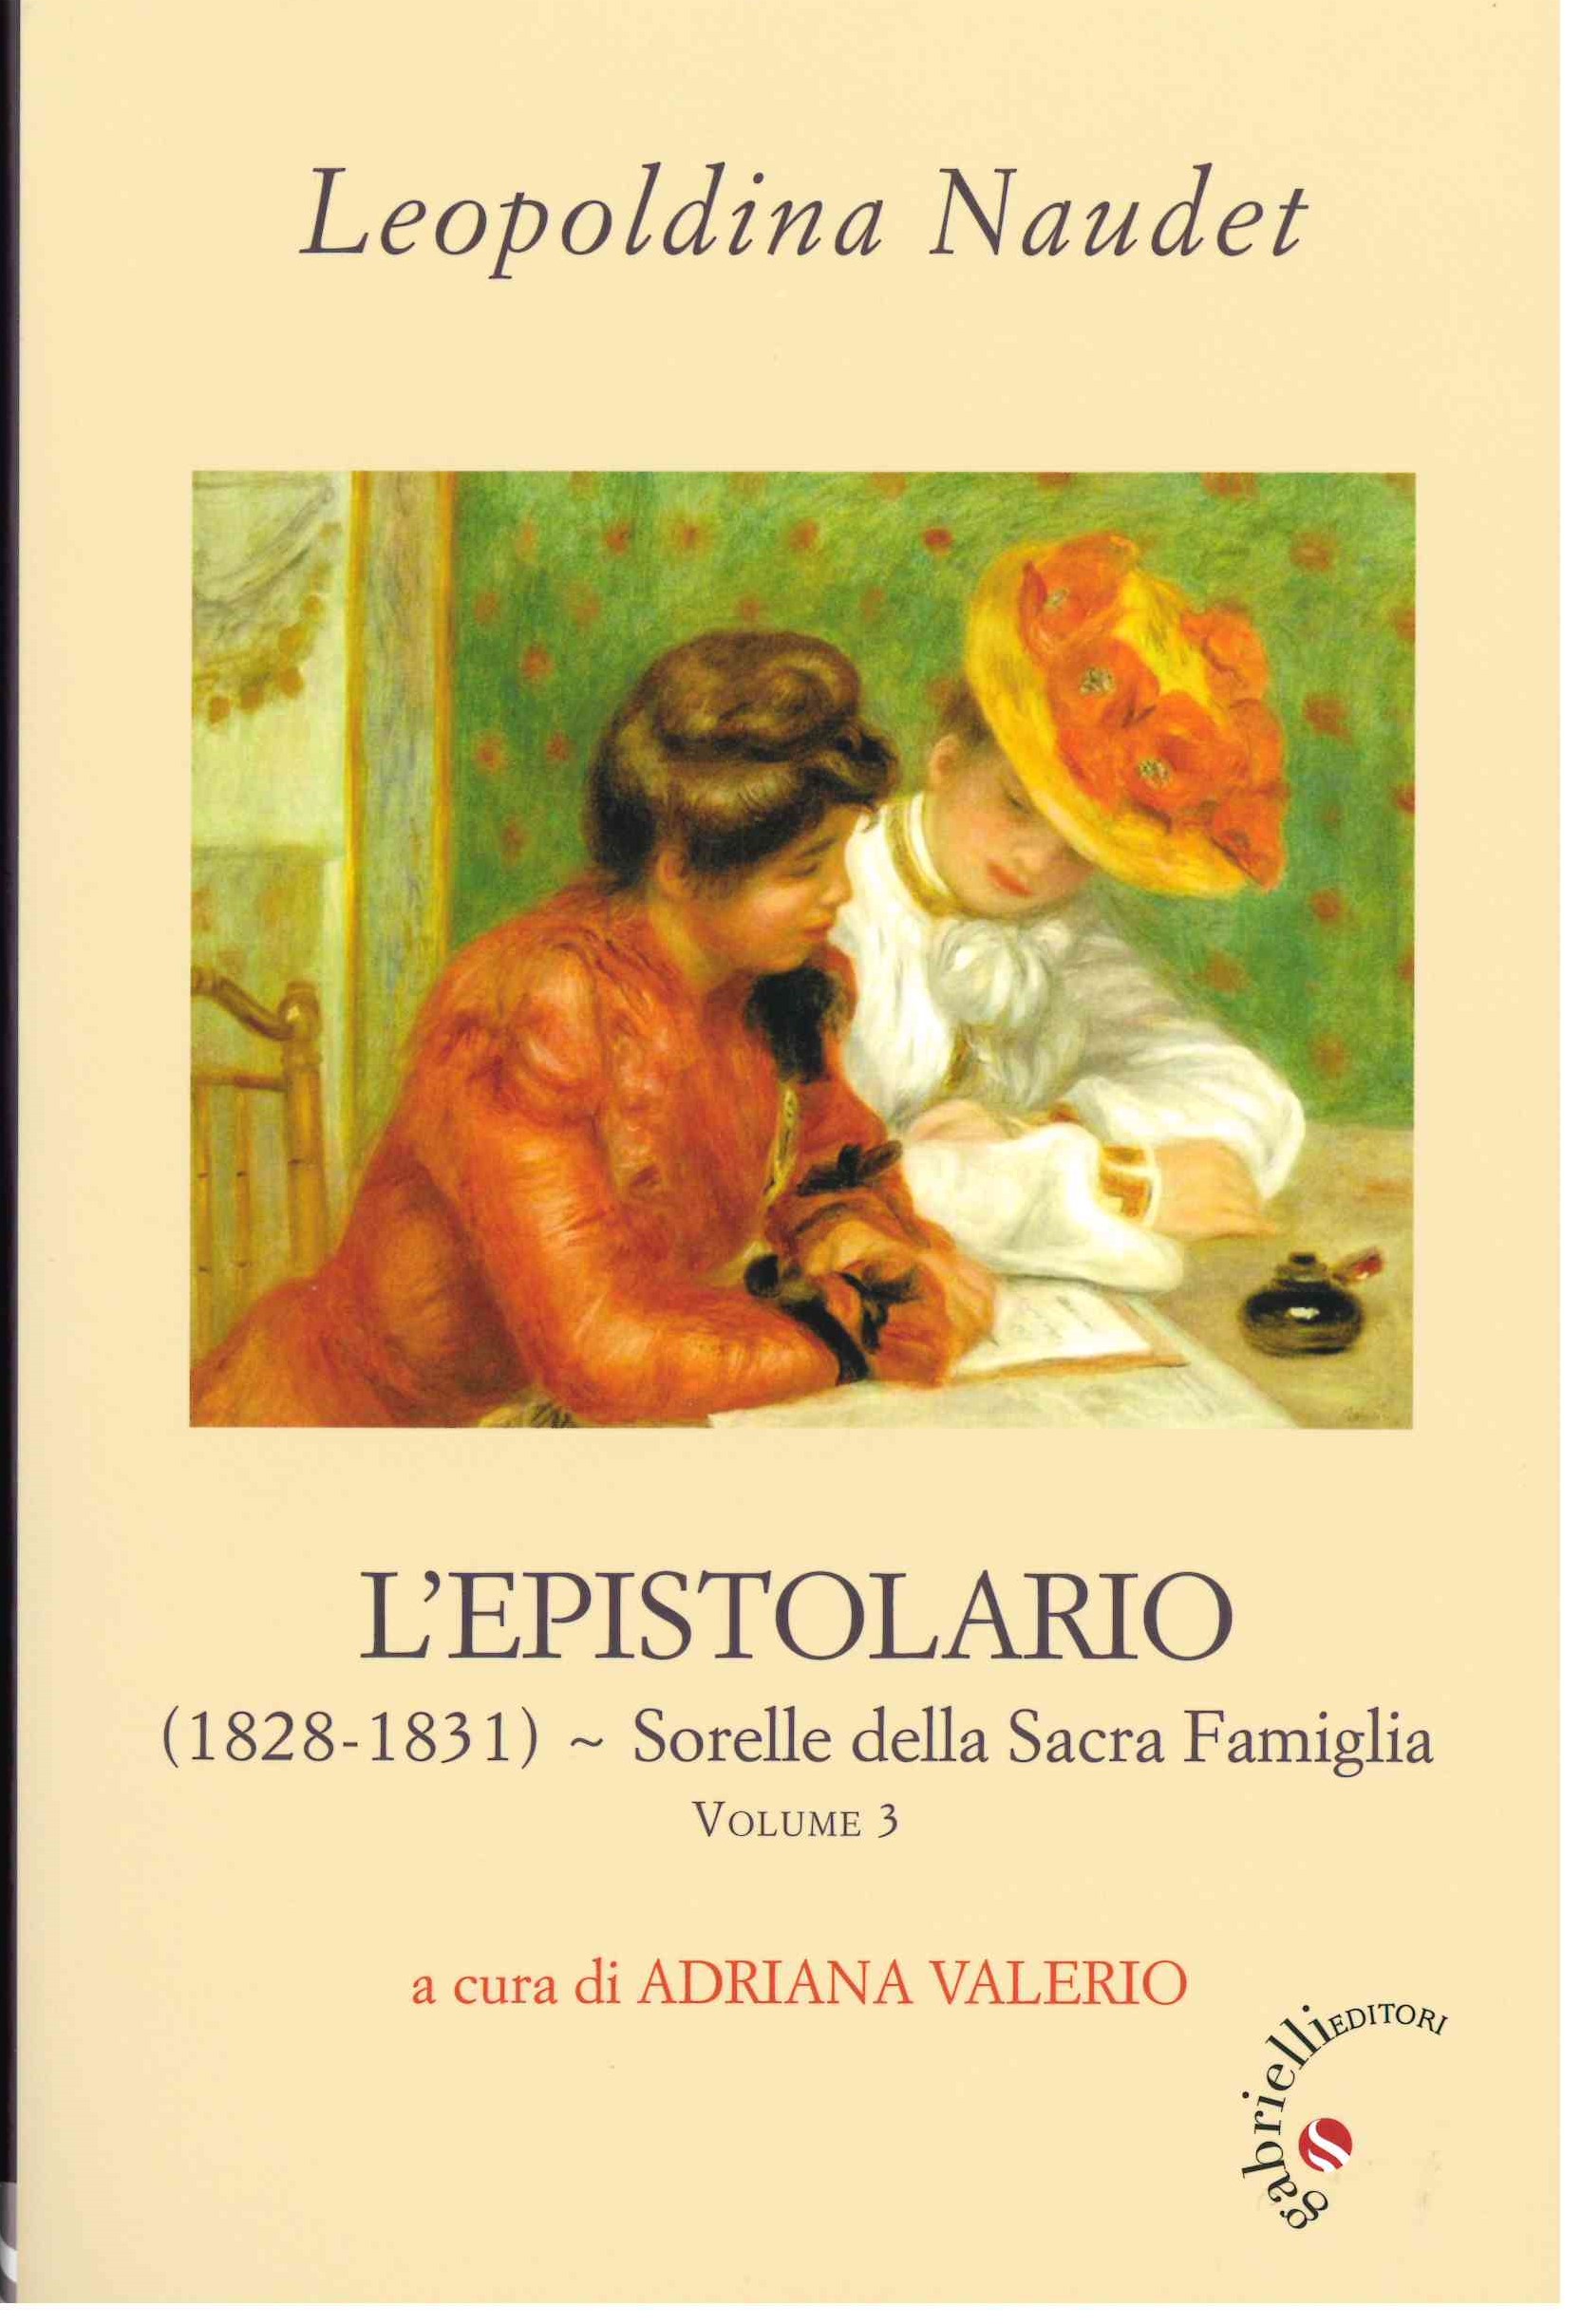 LEOPOLDINA NAUDET, L'EPISTOLARIO a cura di ADRIANA VALERIO Volume 3